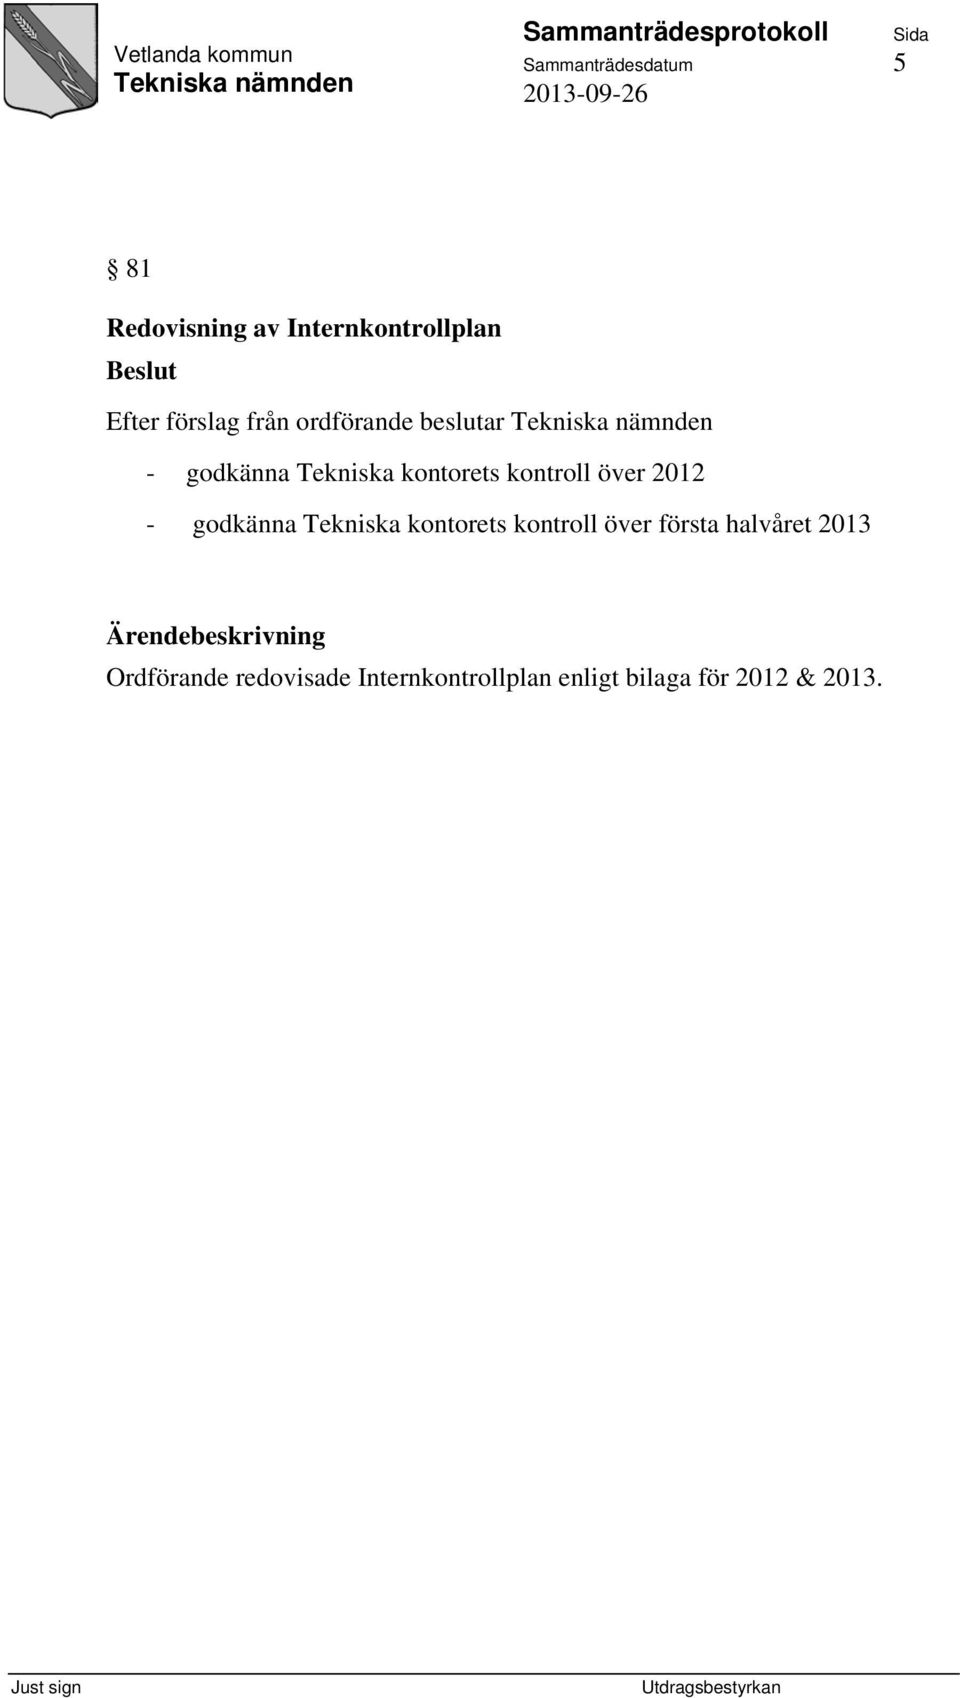 - godkänna Tekniska kontorets kontroll över första halvåret 2013